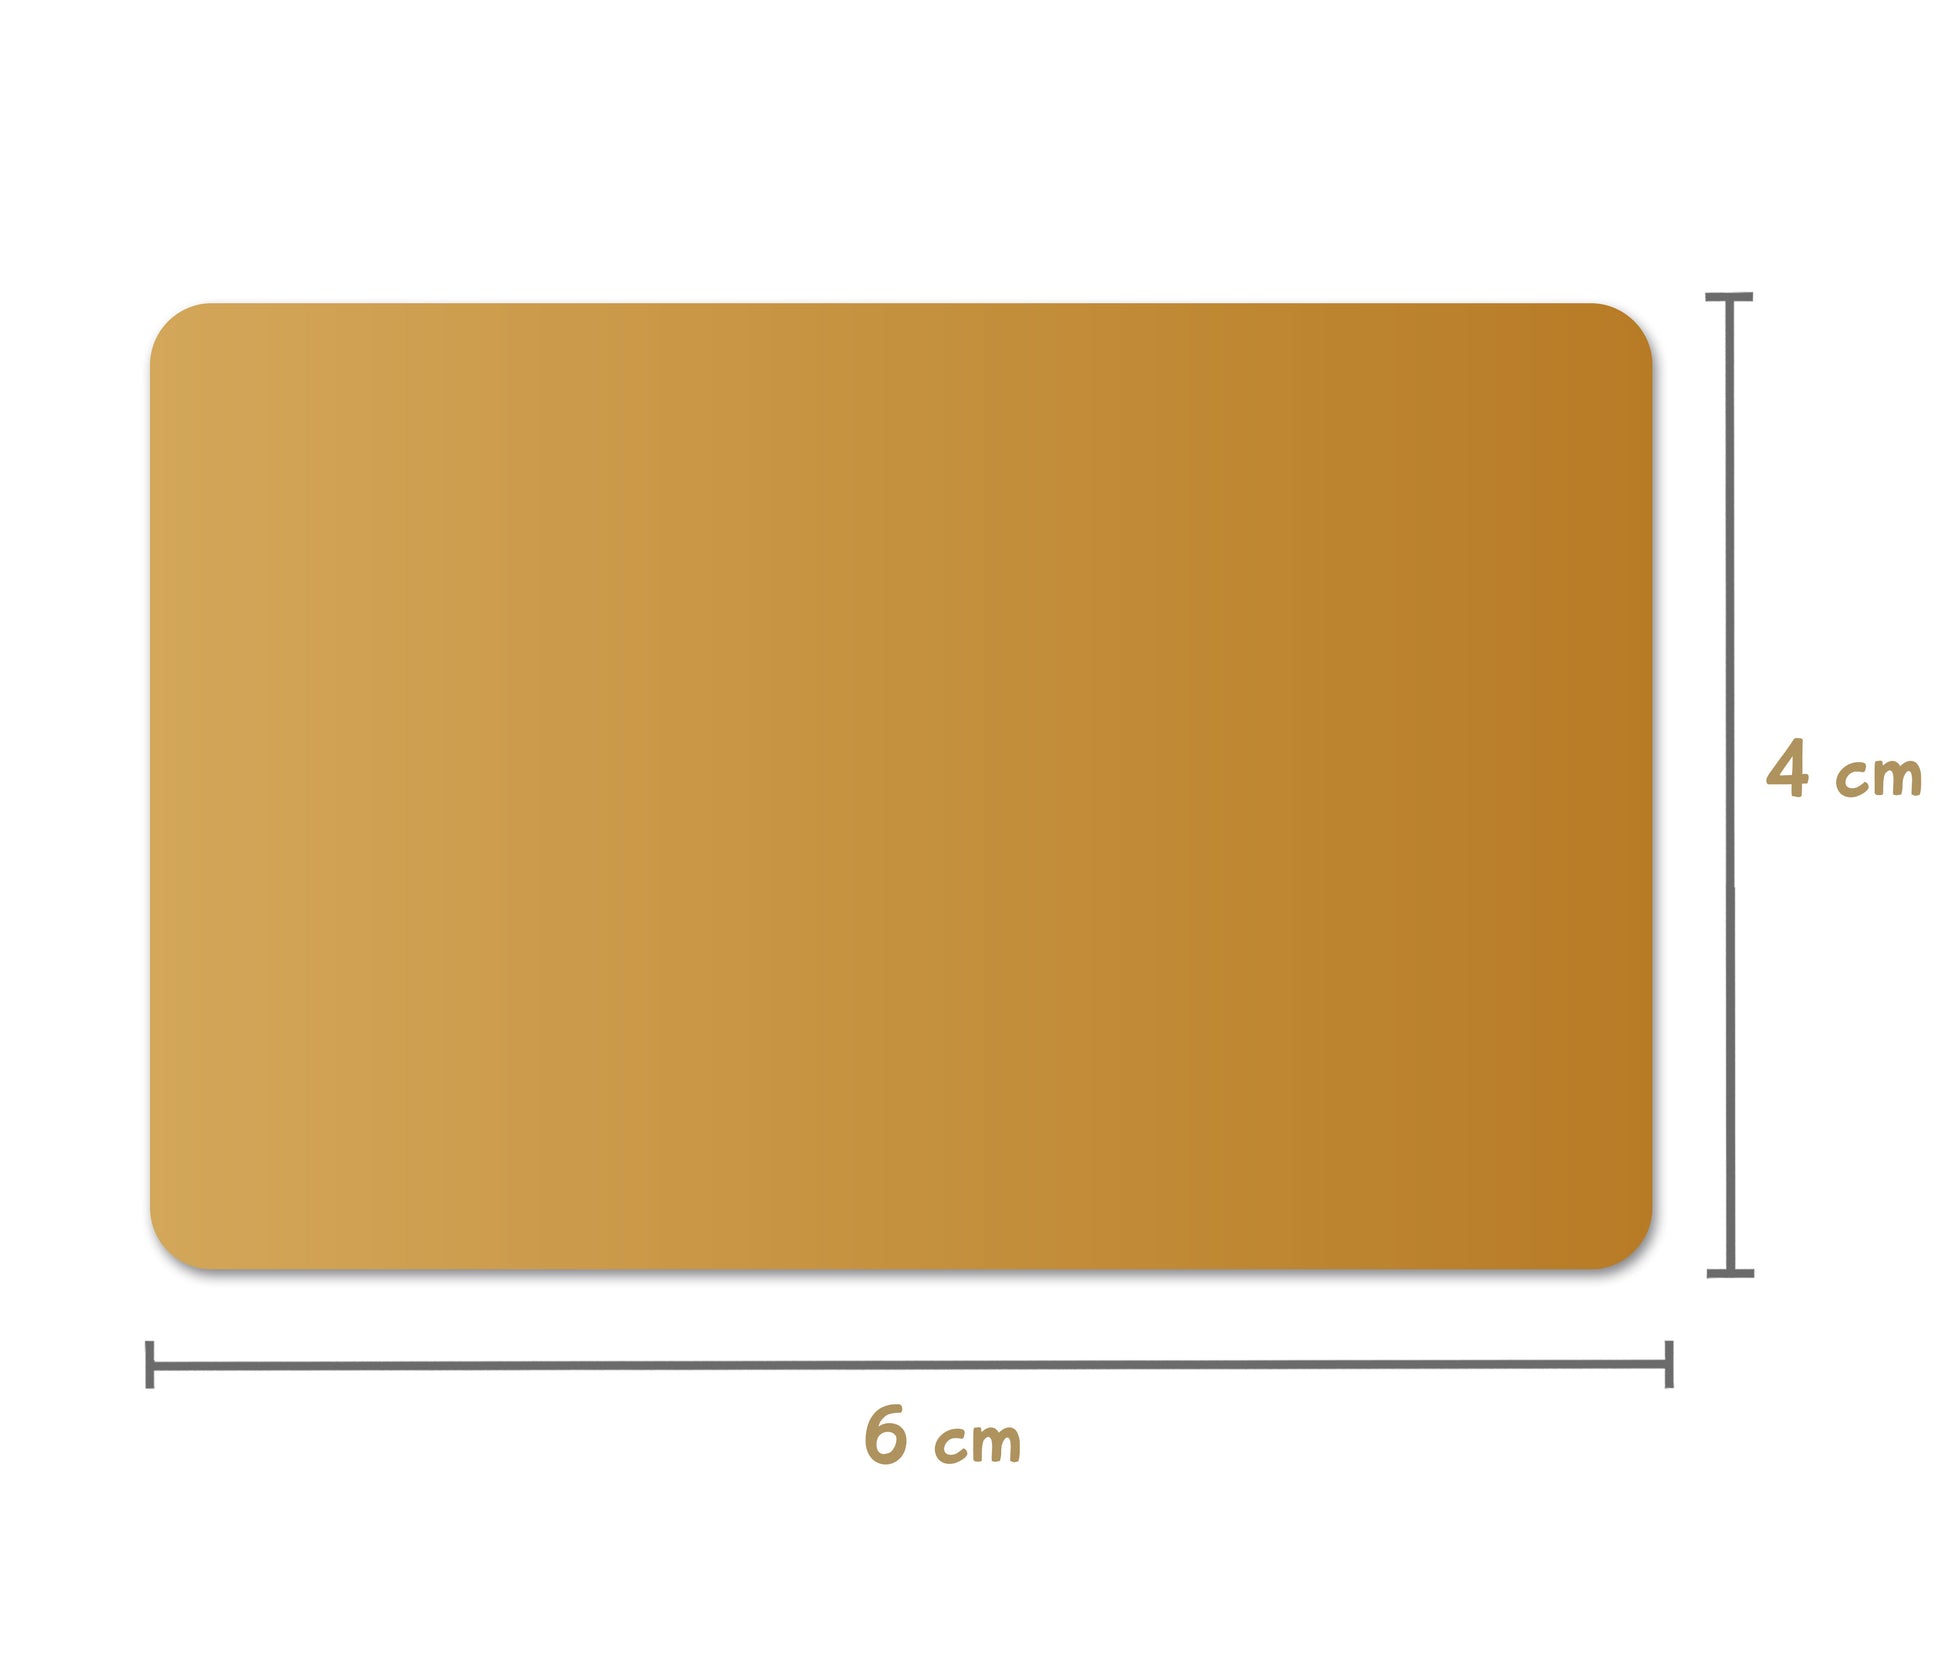 Ansicht der Maße Rubbeletikett gold rechteckig 6 mal 4 Zentimeter